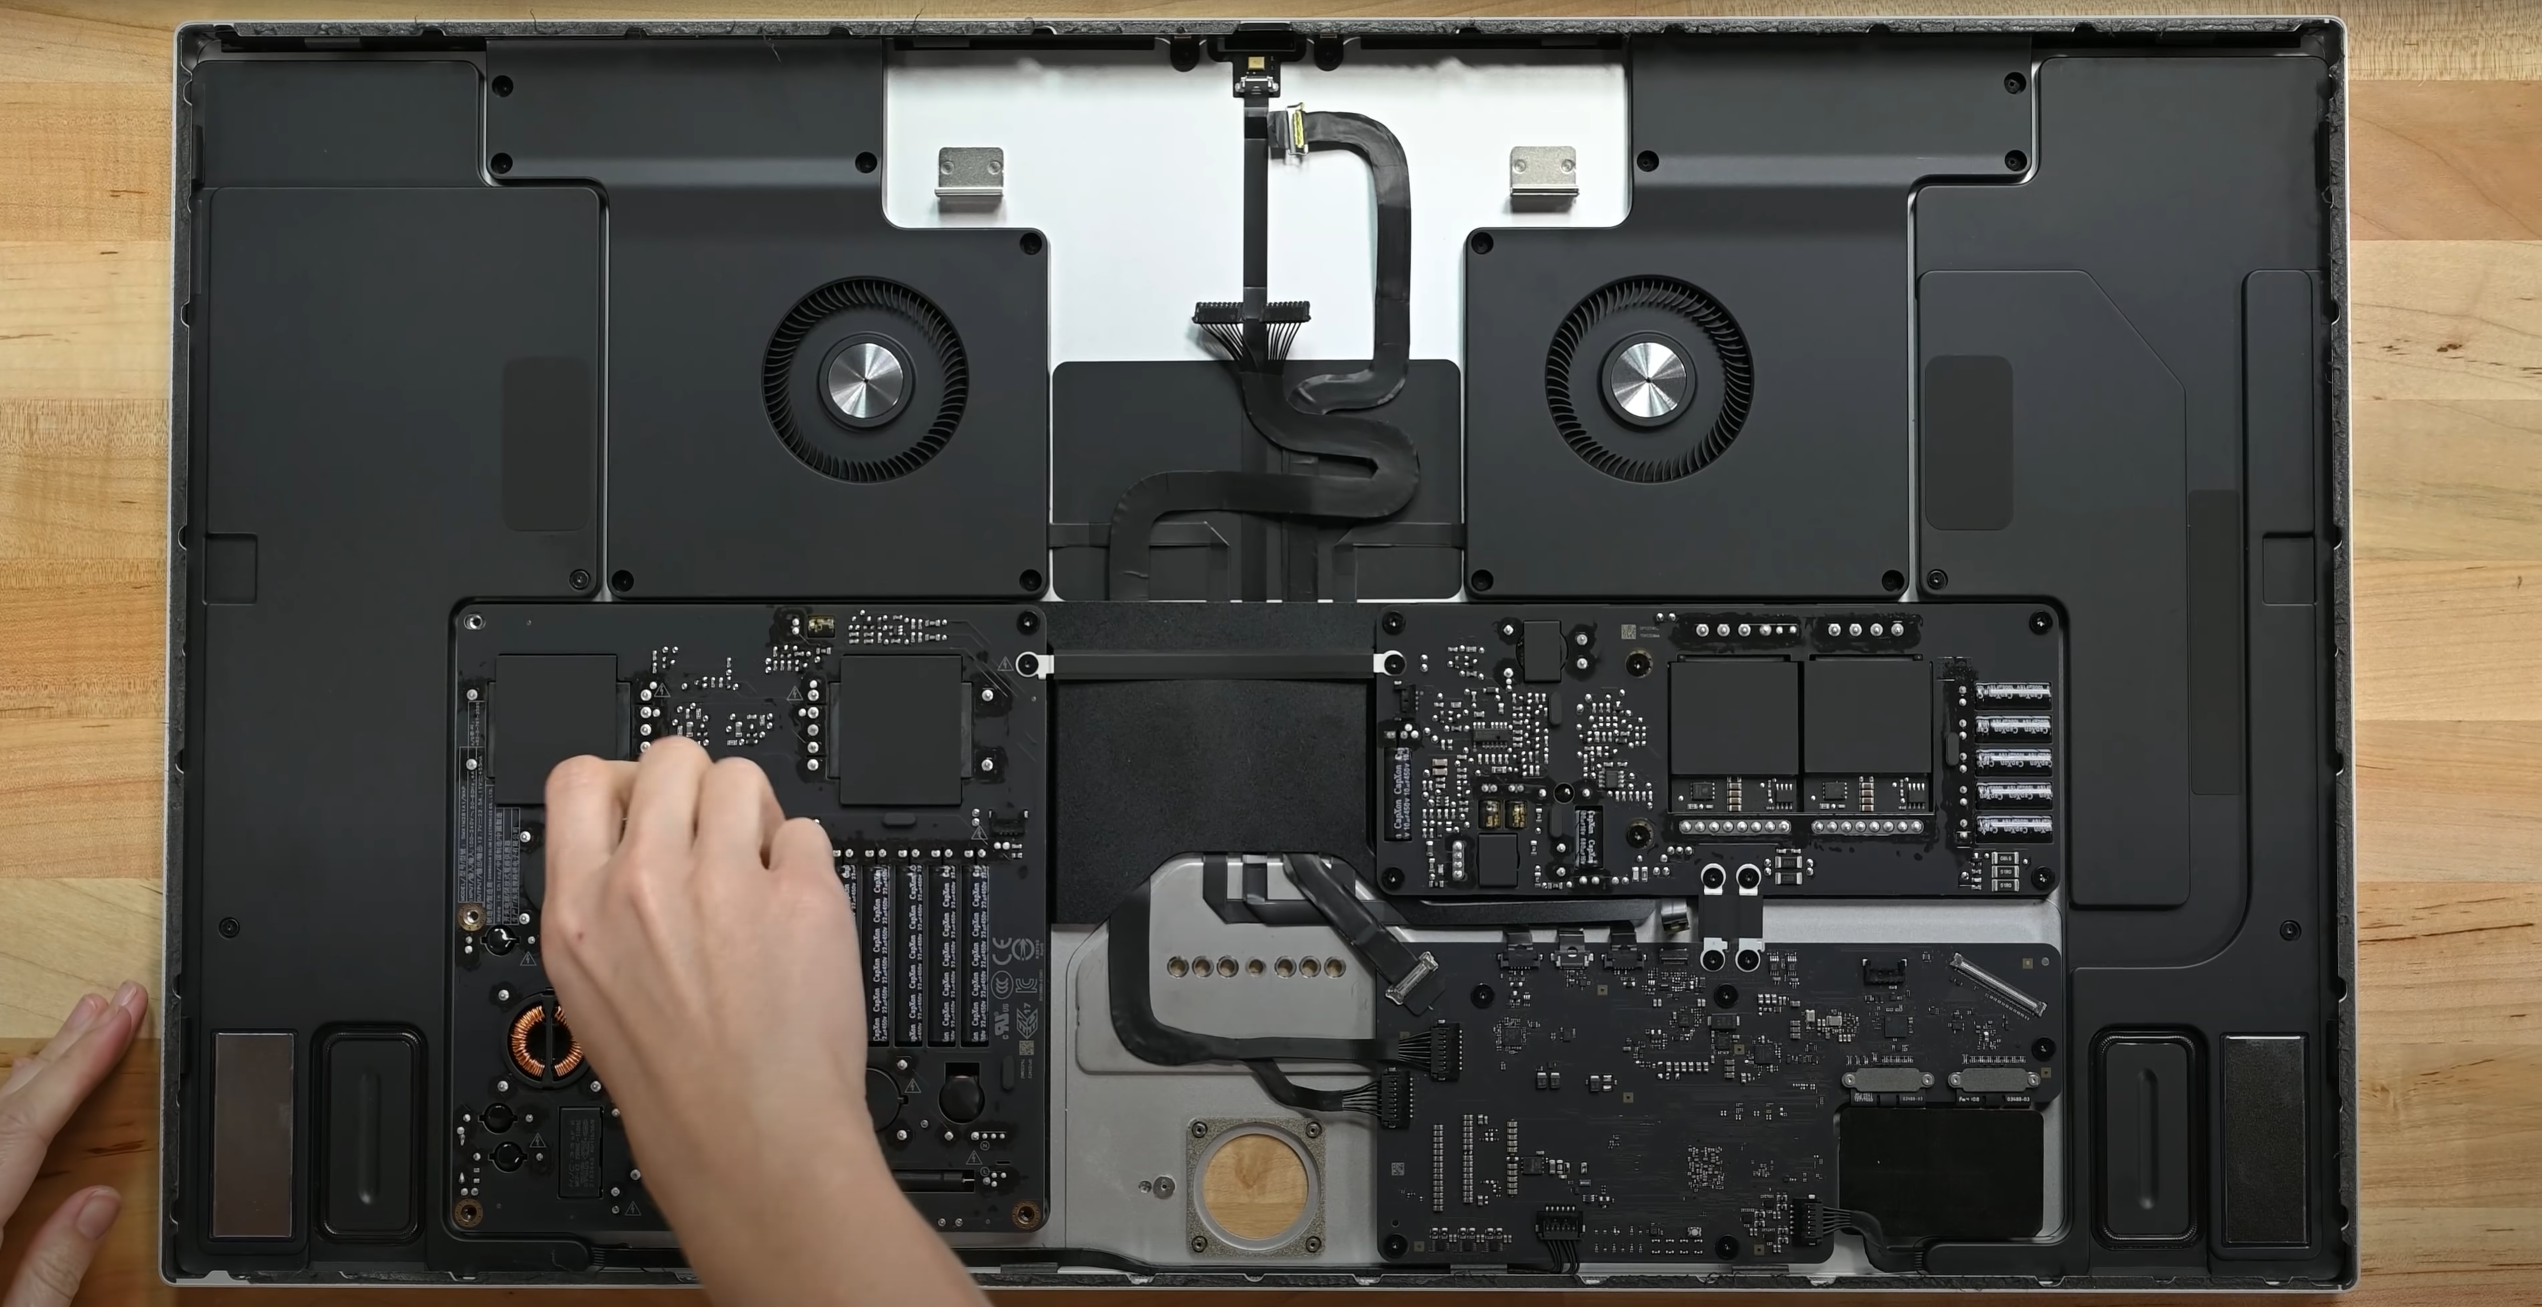 Bộ phận ruột của Apple Studio Display có một kỳ tích đáng kể về kỹ thuật vượt trội